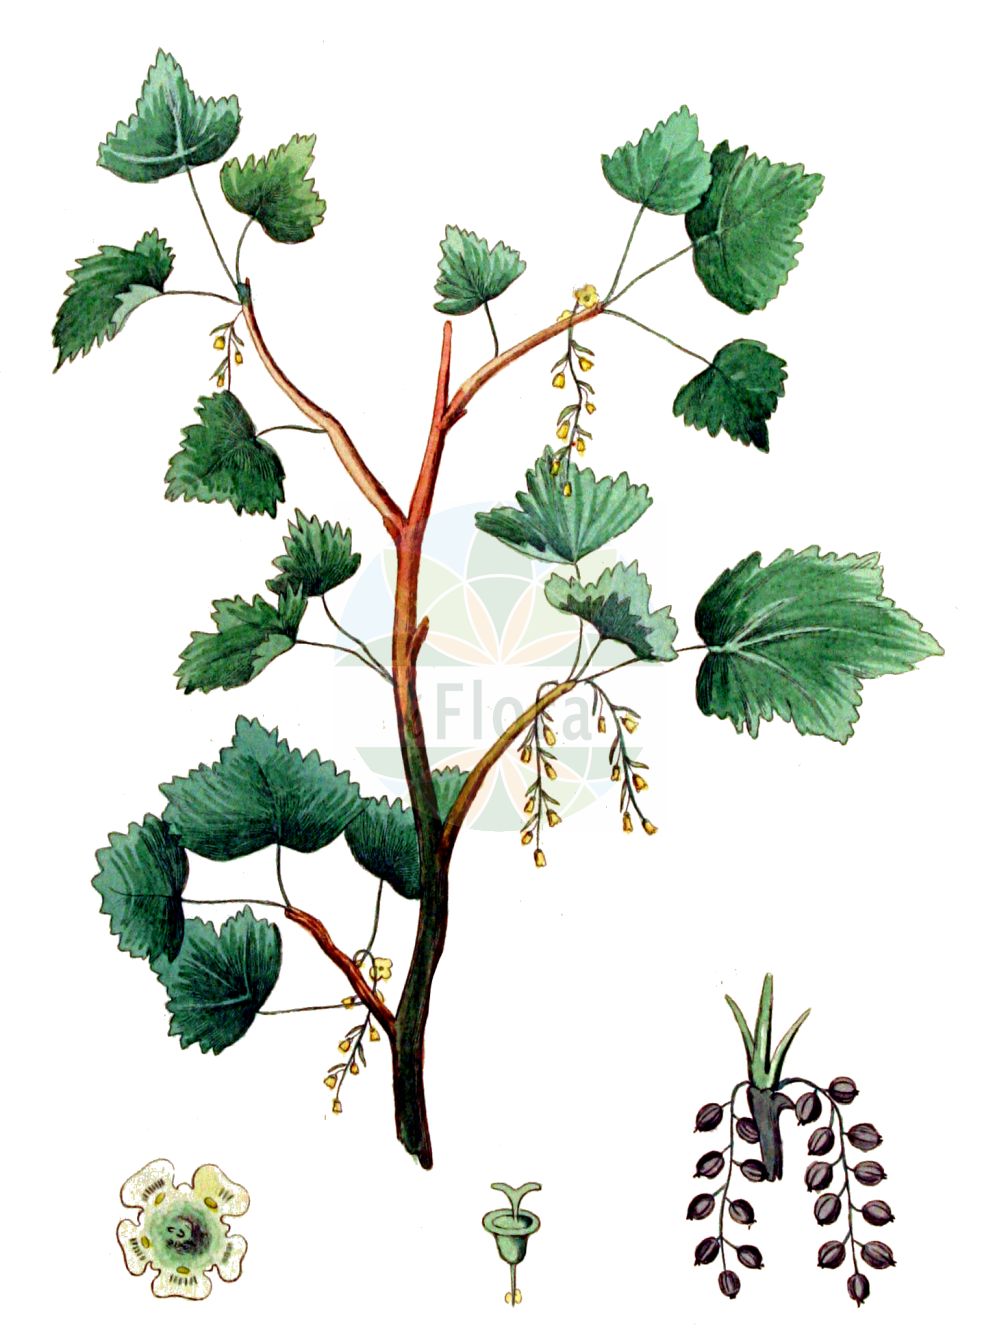 Historische Abbildung von Ribes nigrum (Schwarze Johannisbeere - Black Currant). Das Bild zeigt Blatt, Bluete, Frucht und Same. ---- Historical Drawing of Ribes nigrum (Schwarze Johannisbeere - Black Currant). The image is showing leaf, flower, fruit and seed.(Ribes nigrum,Schwarze Johannisbeere,Black Currant,Ribes nigrum,Schwarze Johannisbeere,Ahlbeere,Gichtbeere,Wanzenbeere,Black Currant,European Black Currant,Ribes,Johannisbeere,Currant,Grossulariaceae,Stachelbeergewächse,Gooseberry family,Blatt,Bluete,Frucht,Same,leaf,flower,fruit,seed,Kops (1800-1934))